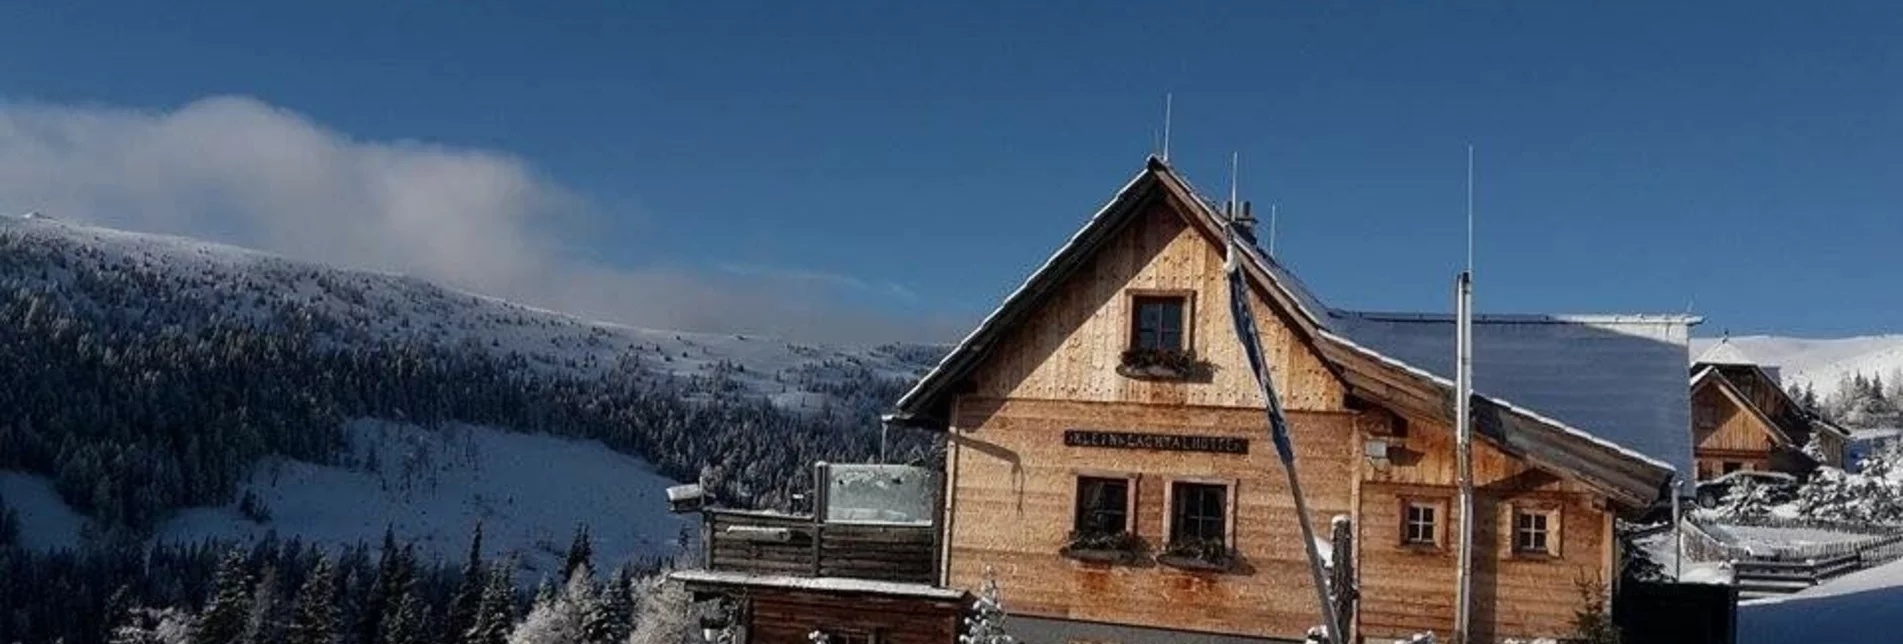 Winter Hiking Kleinlachtalhütte - Touren-Impression #1 | © Tourismusverband Murau